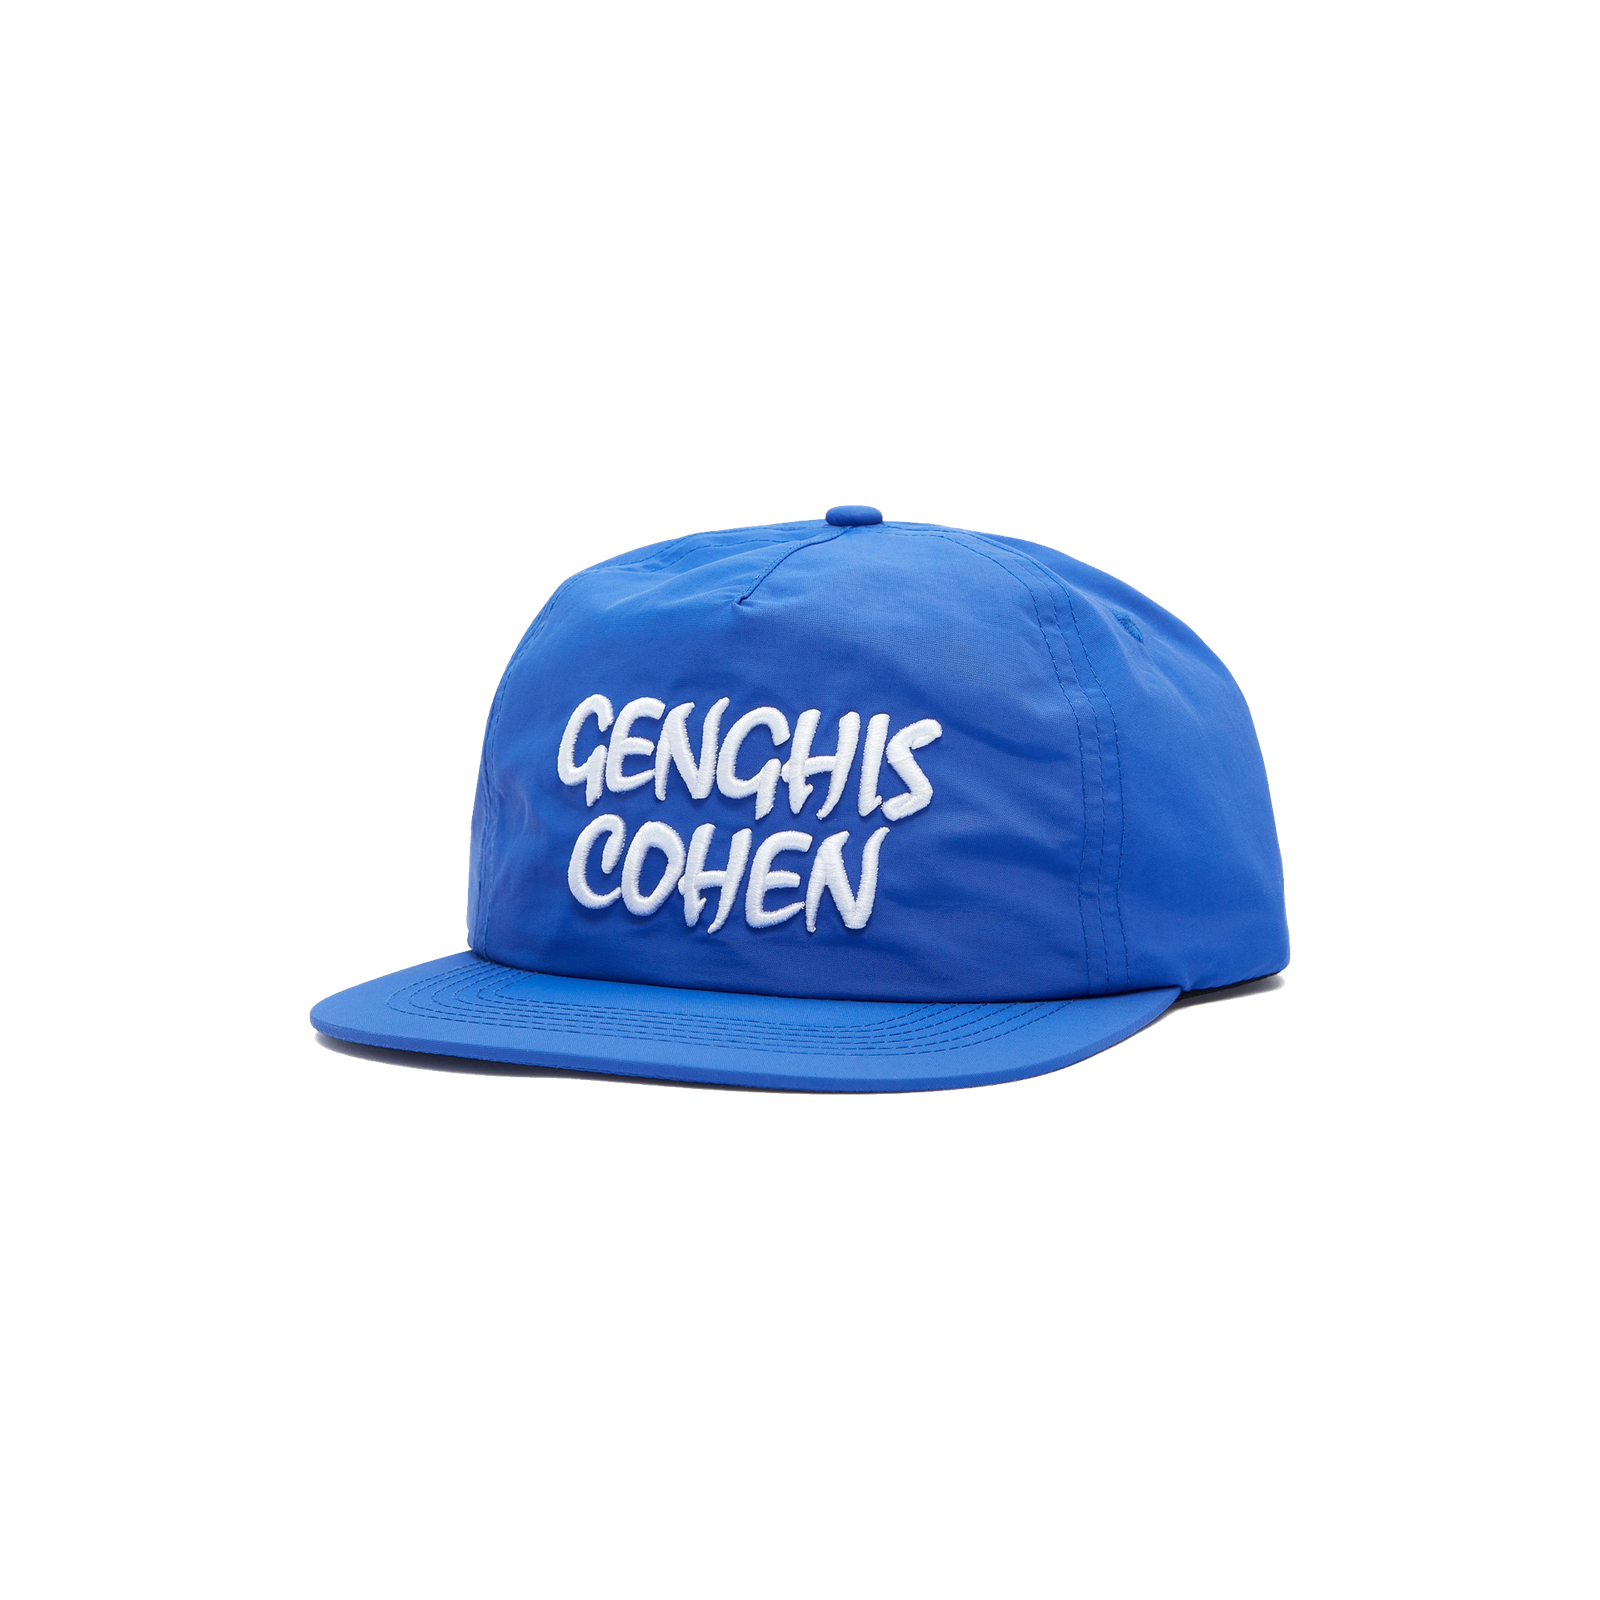 Genghis Cohen Hat-1